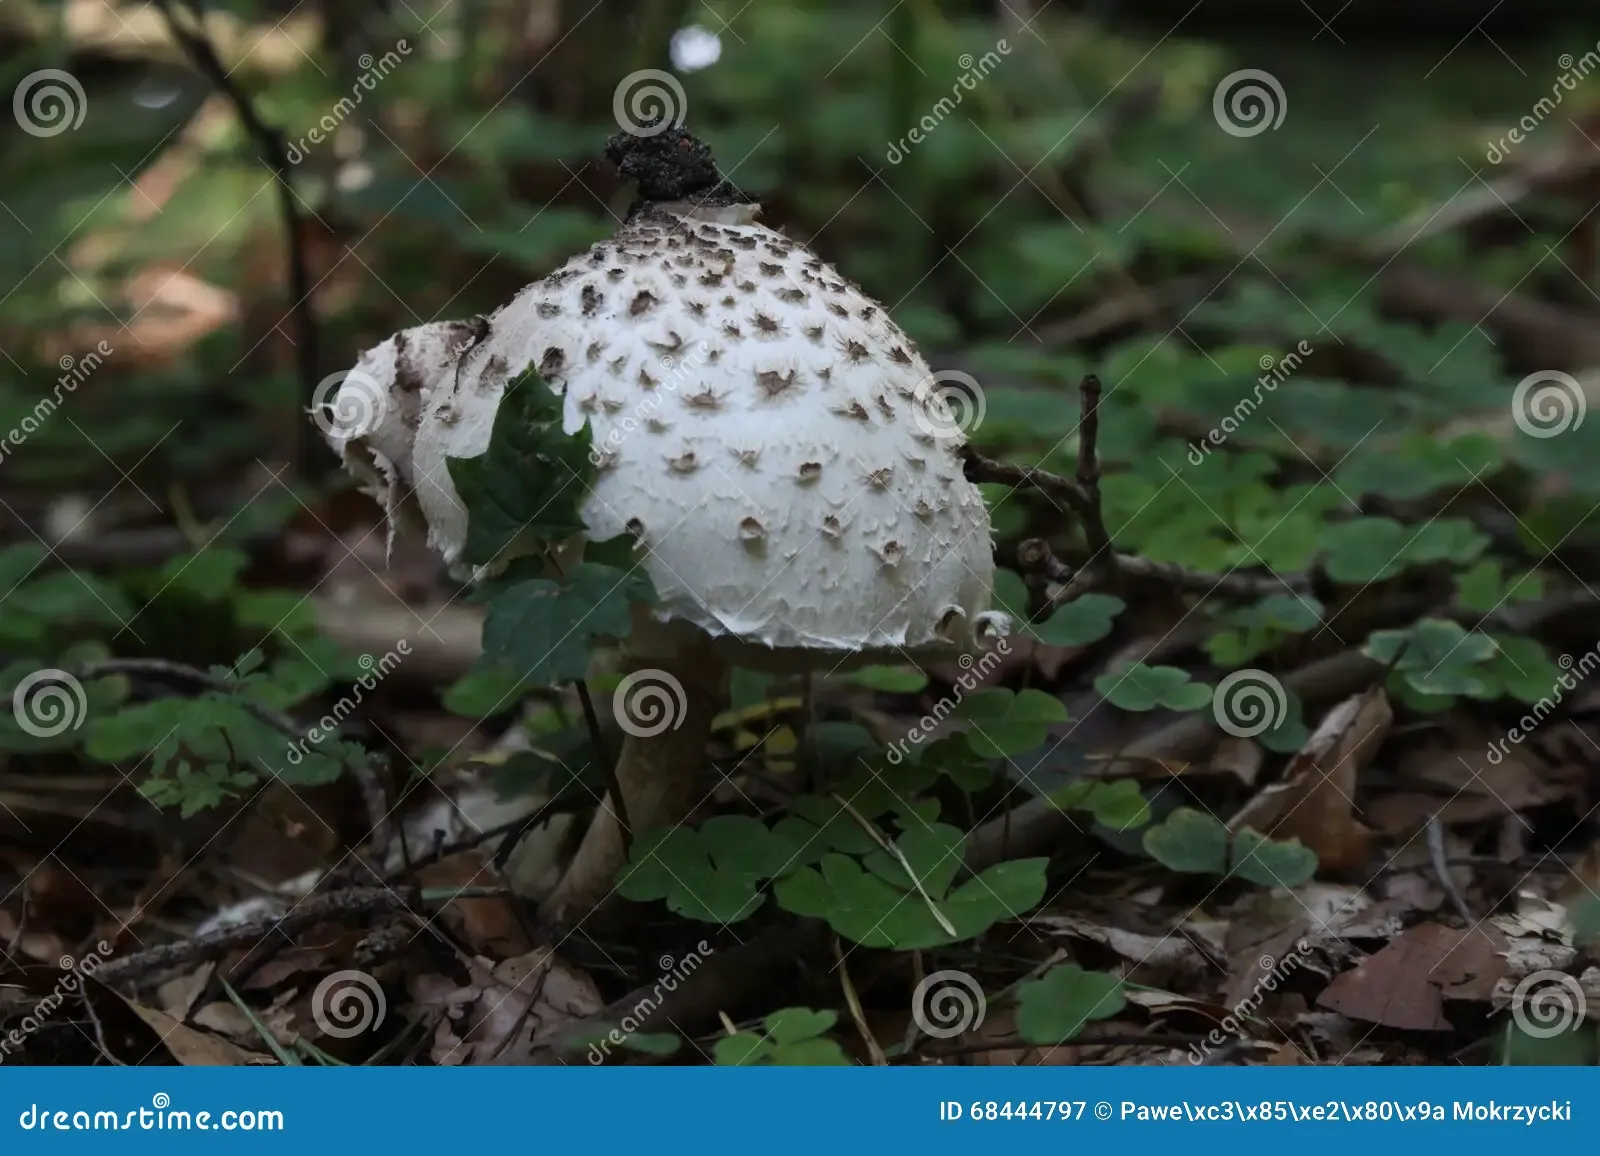 mushroom-macrolepiota-procera-grow-forest-68444797.jpg